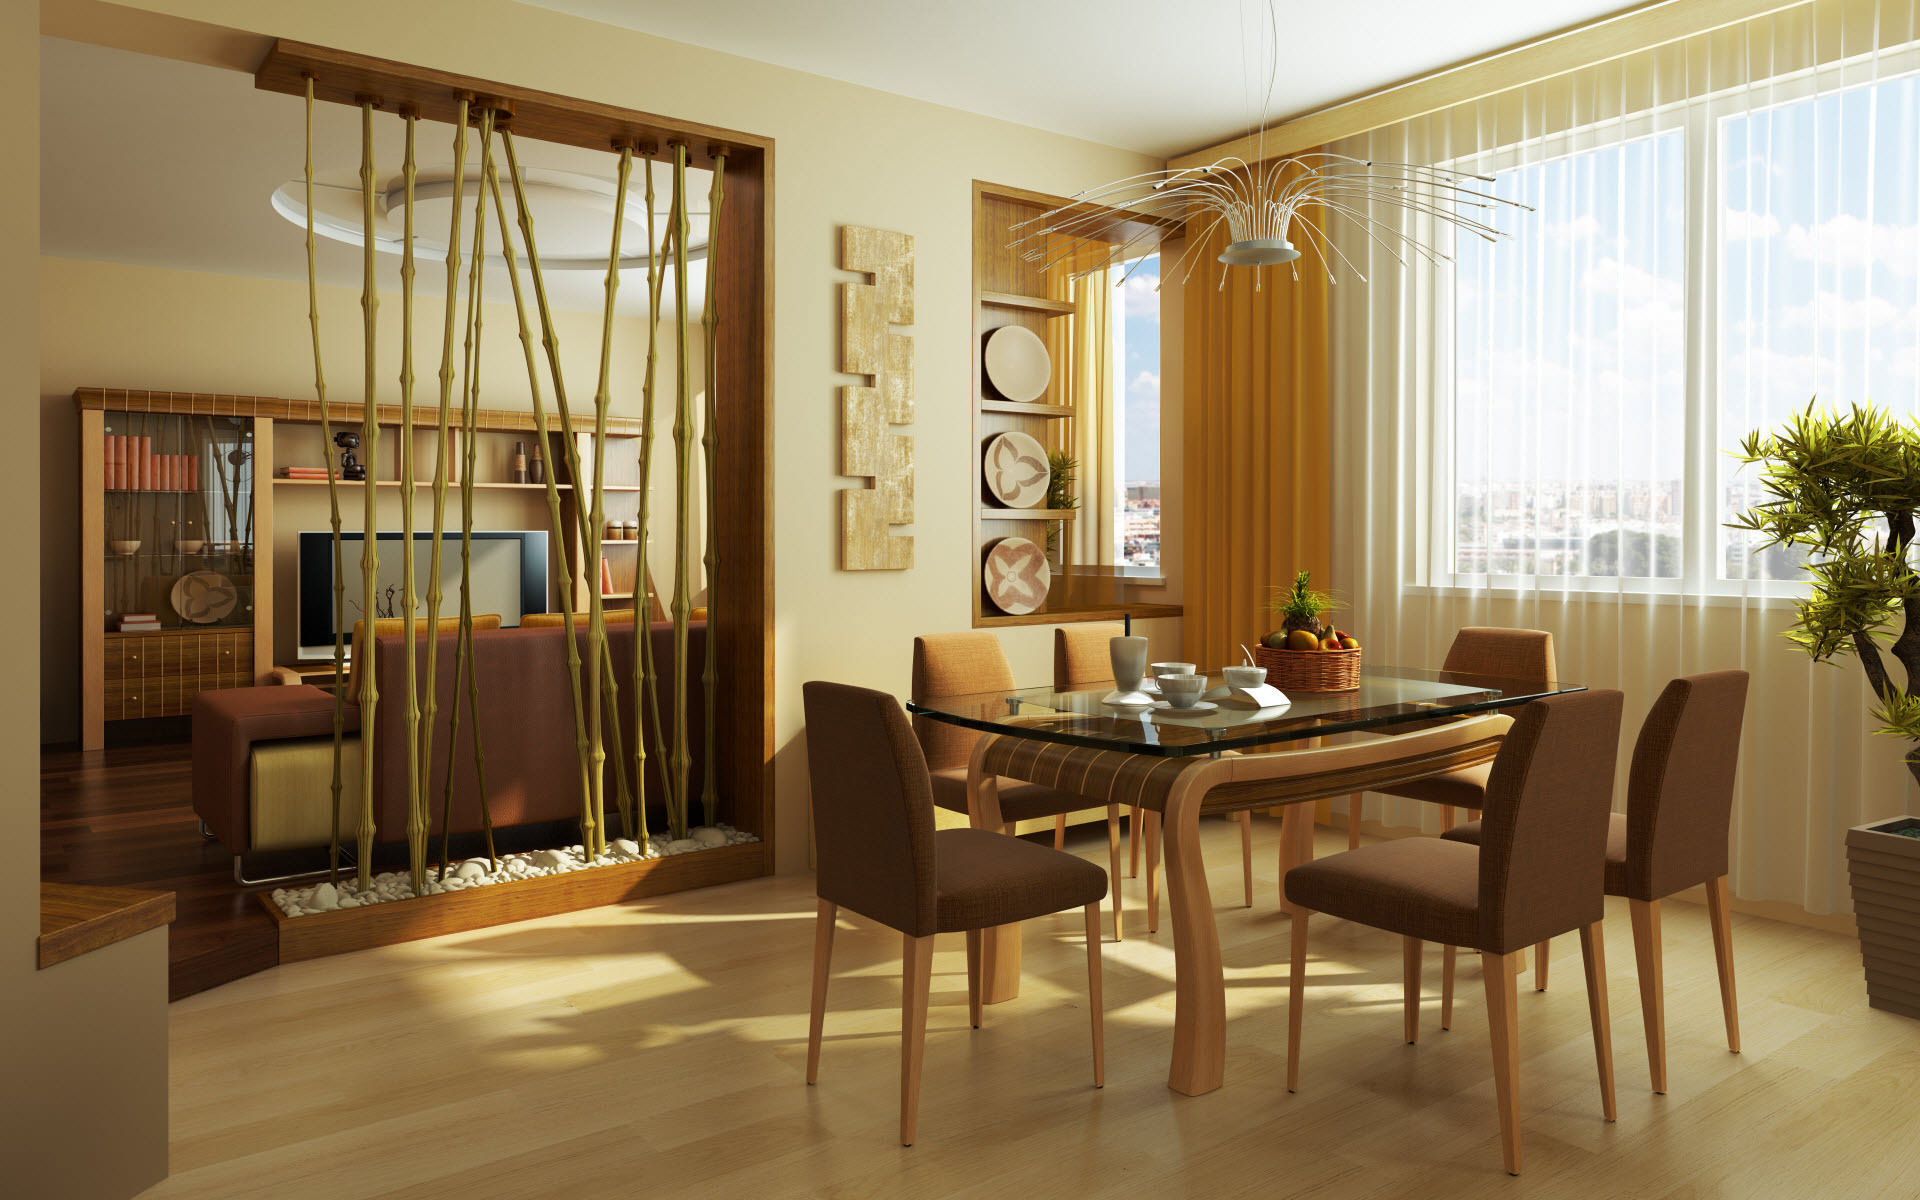 Room design 3 in 1 cucina sala da pranzo soggiorno in colori vivaci